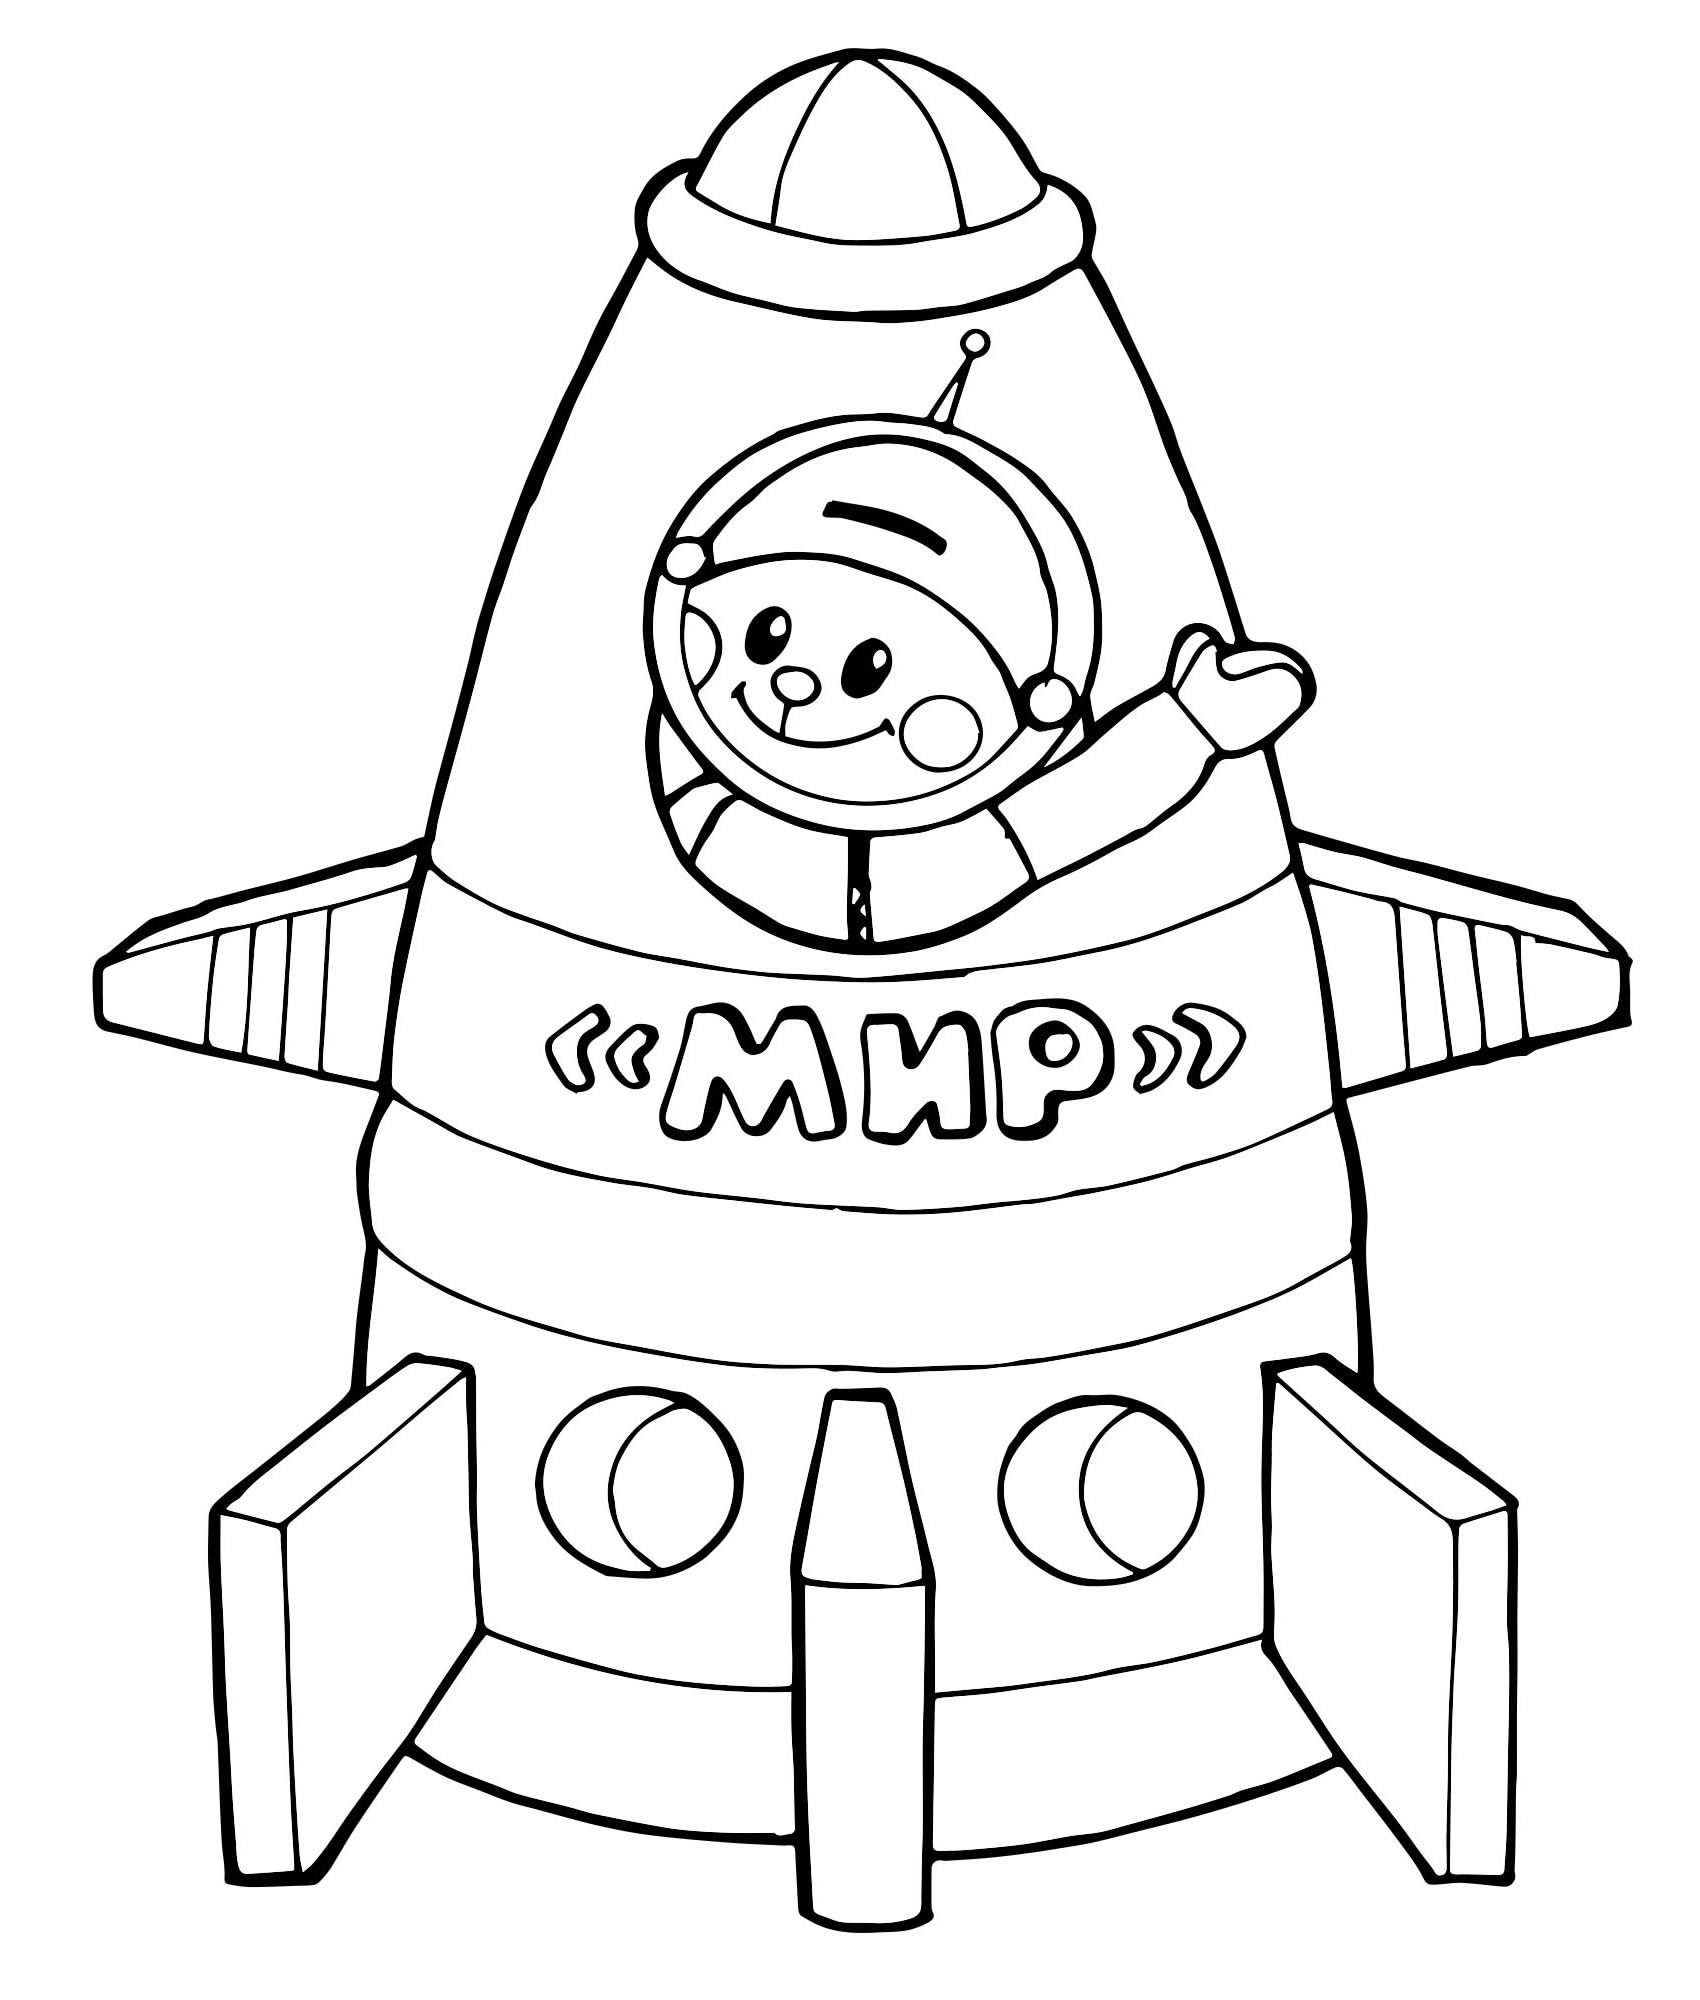 Раскраска ракета для детей 4 лет. Раскраска. В космосе. Космос раскраска для детей. Ракета раскраска. Ракета для раскрашивания для детей.